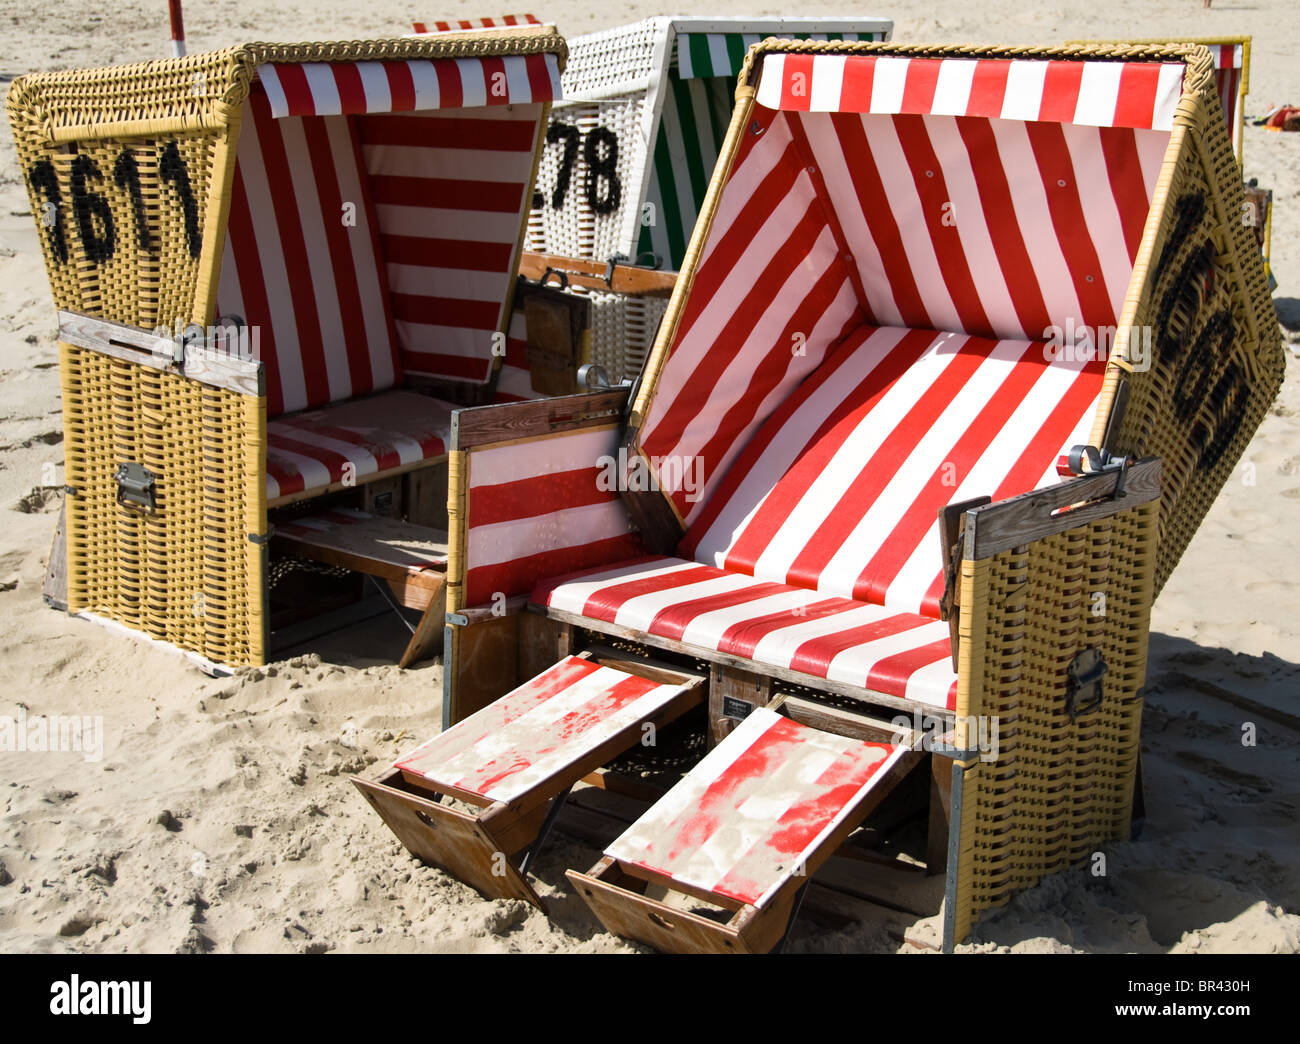 Liegestühle am Strand, Langeoog, Deutschland Stockfoto